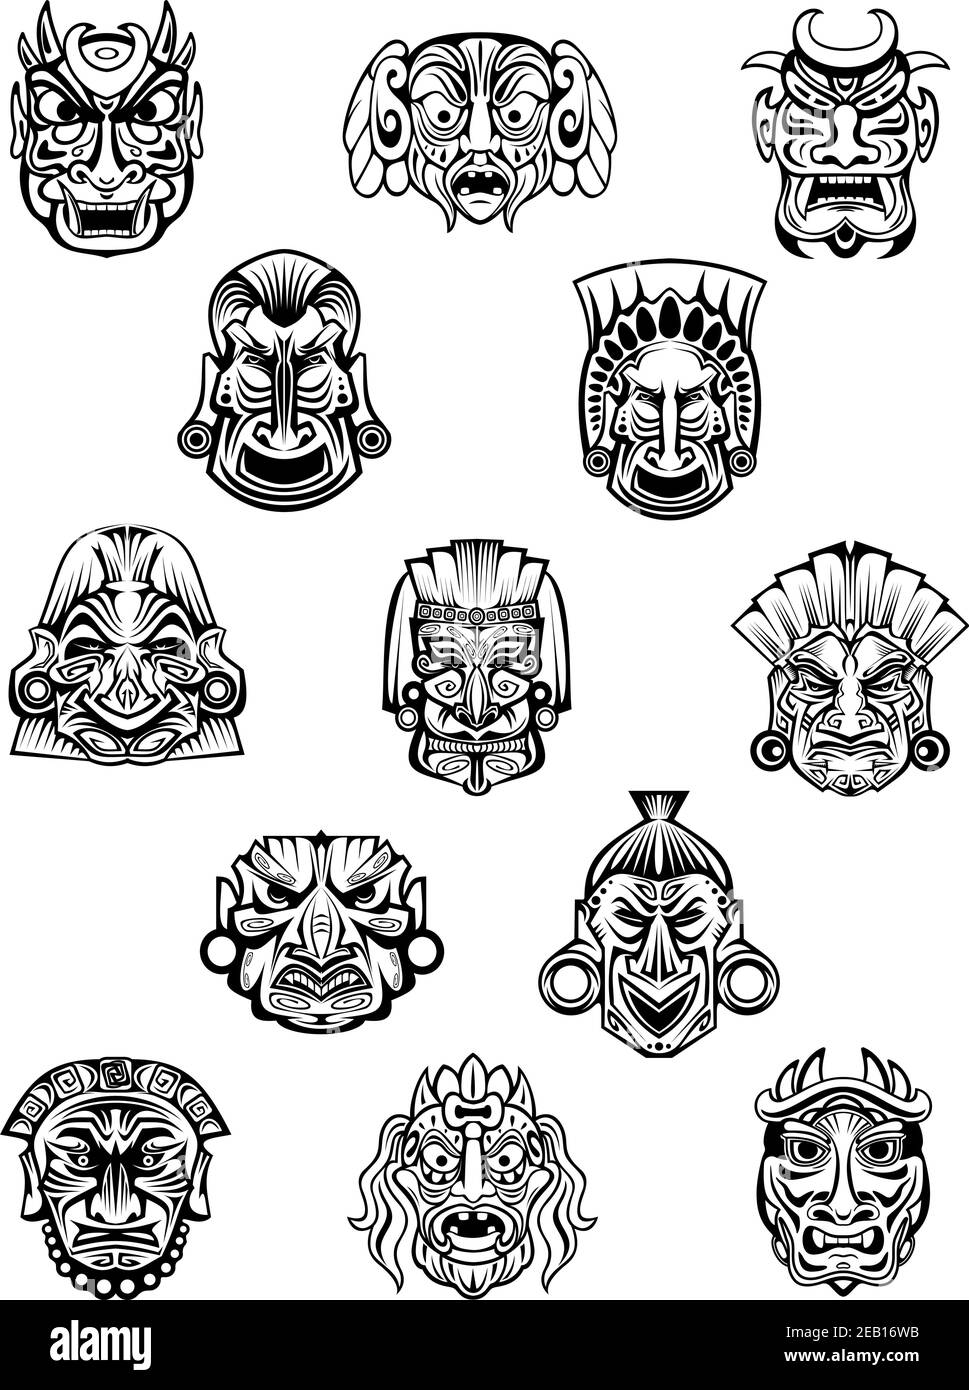 Rituelle zeremonielle geschnitzte Masken im traditionellen afrikanischen Stammesstil mit Verschiedene Emotionsausdrücke für Avatare oder historische Konzeptgestaltung Stock Vektor